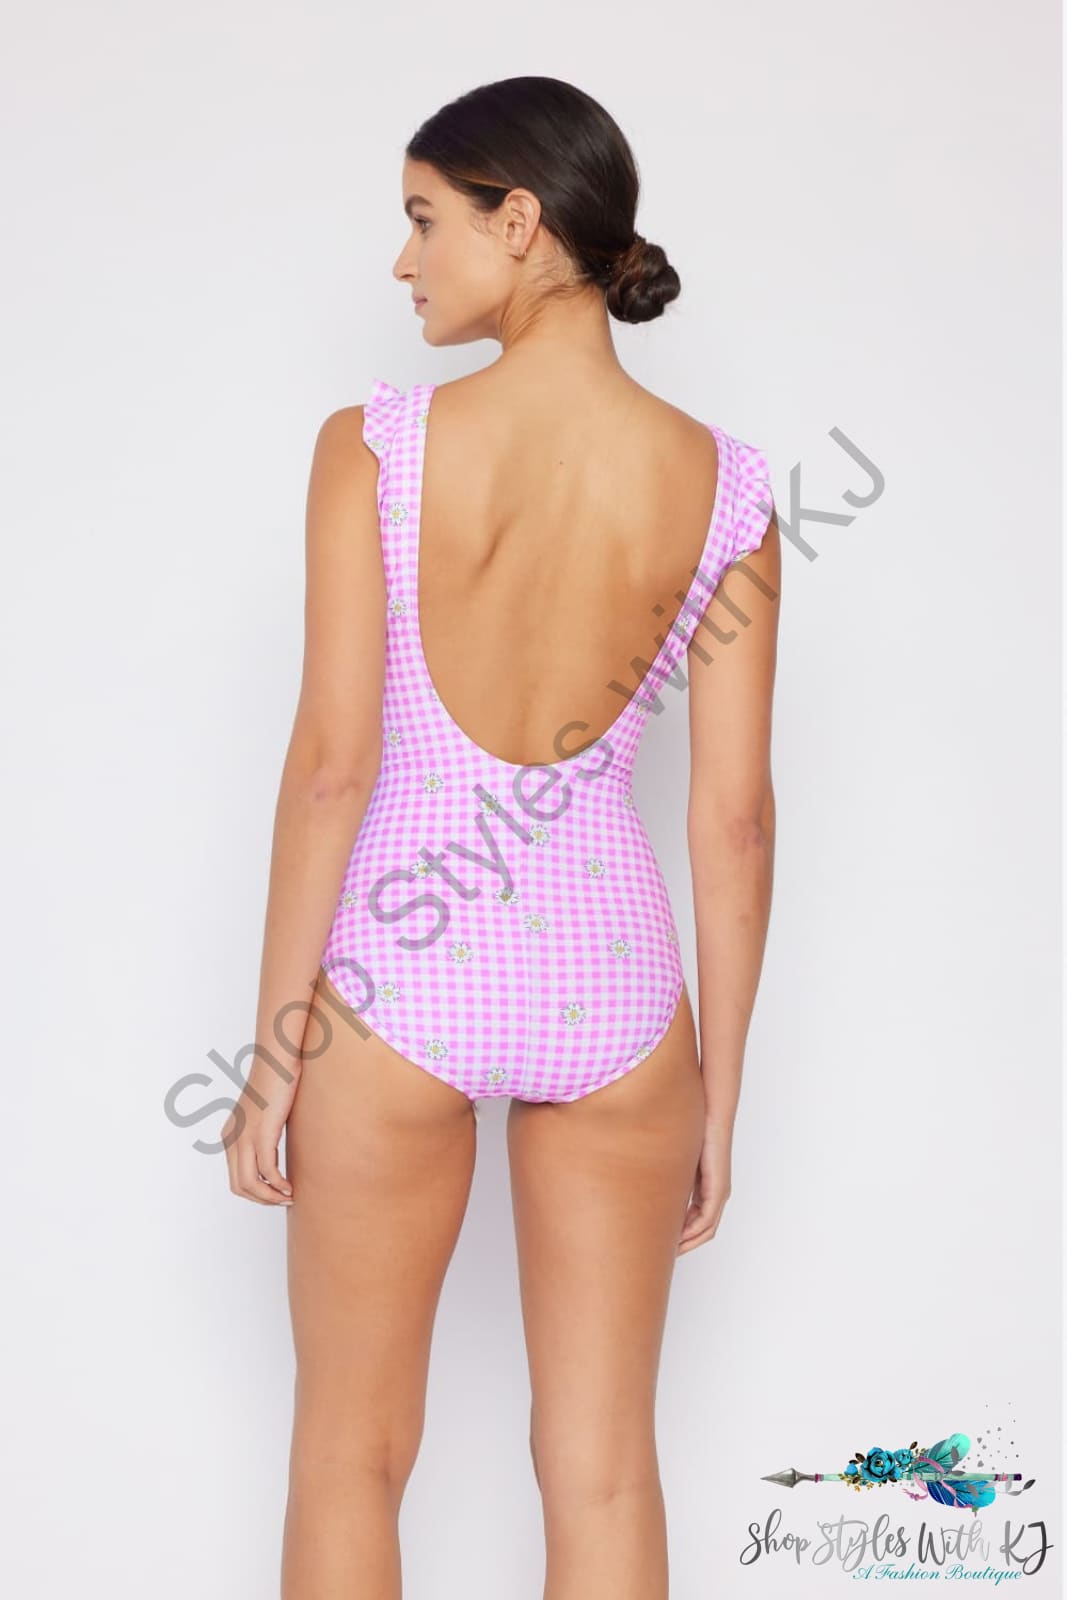 Marina West Swim Full Size Float On Ruffle Faux Wrap One-Piece In Carnation Pink Swimwear